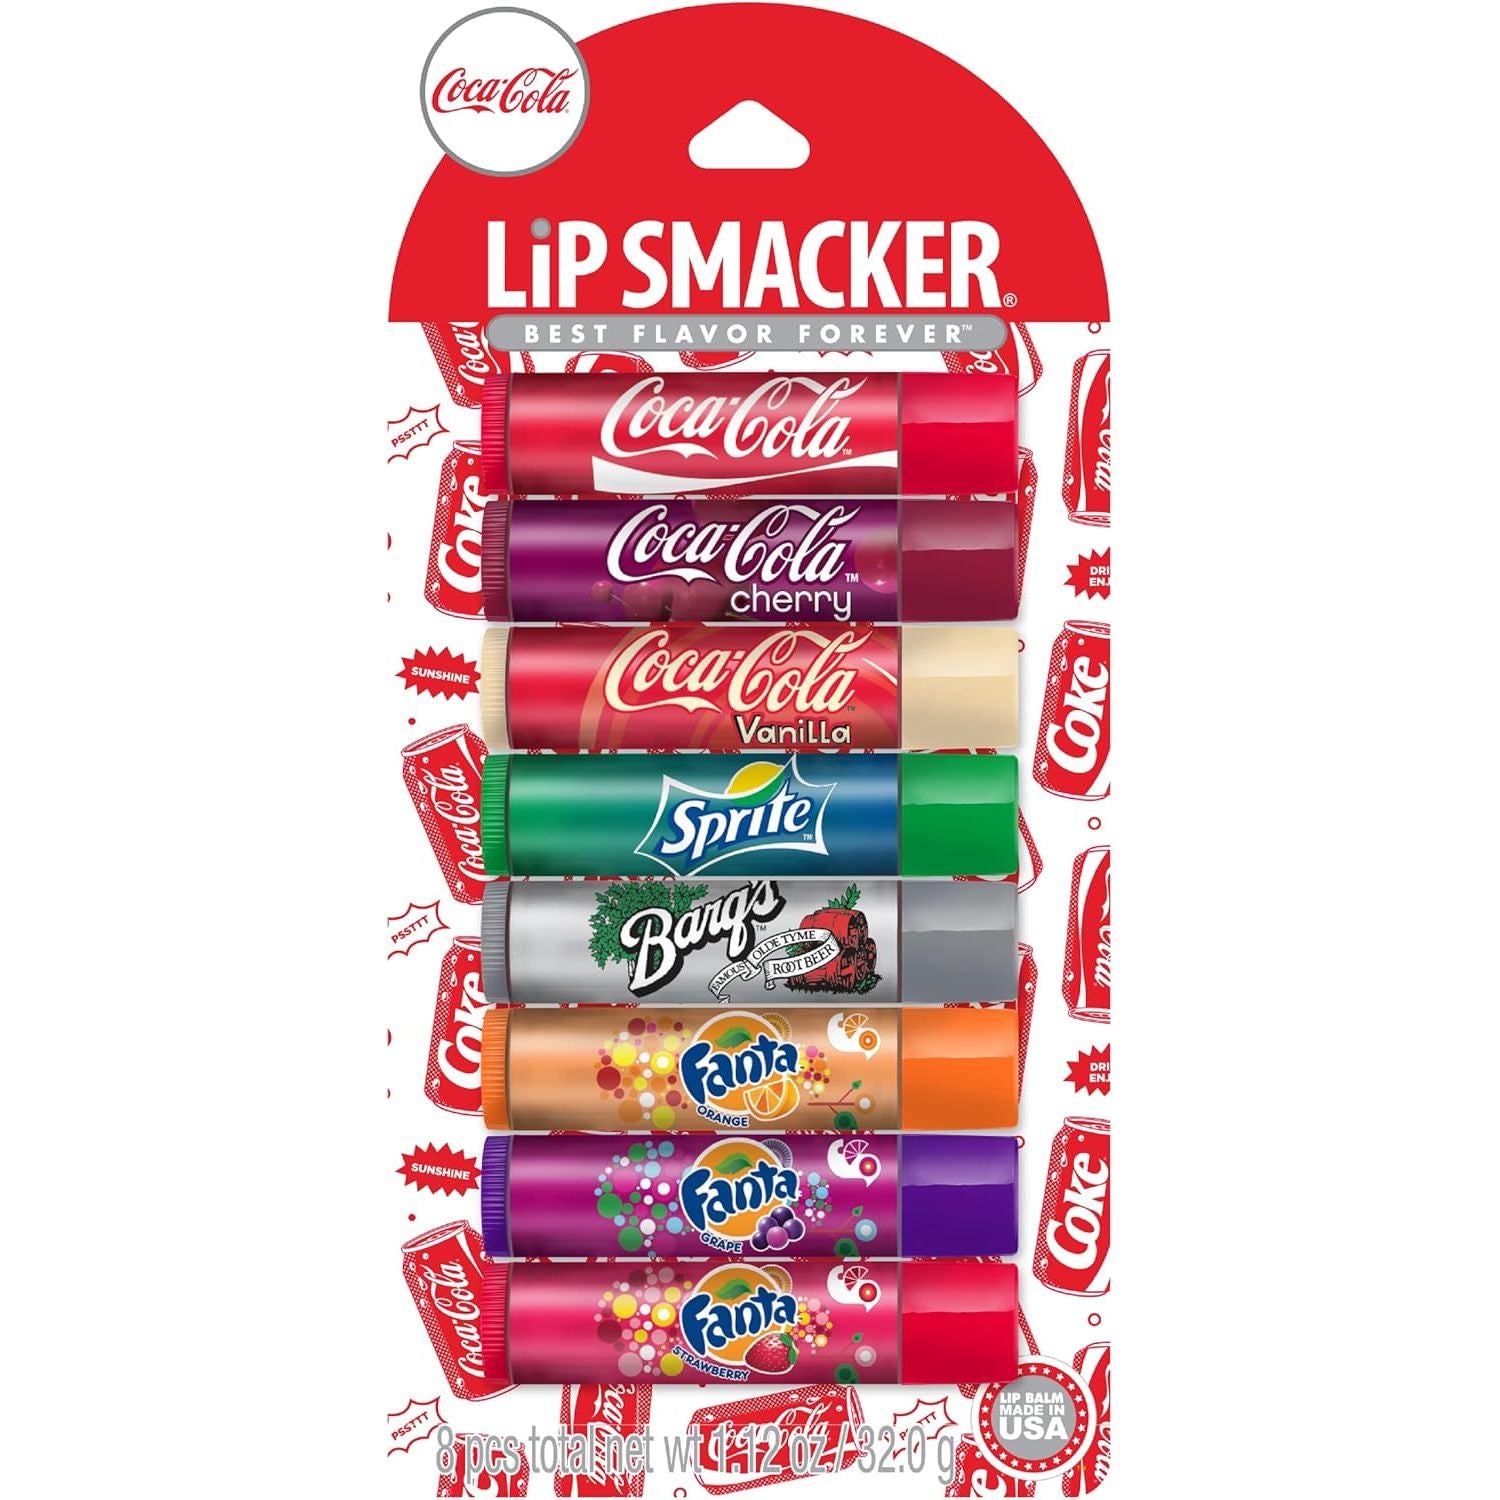 Lip Smacker Coca-Cola Flavored Balm, 8 Count, Flavors Coke, Cherry Vanilla Sprite, Root Beer, Orange Fanta, Grape Strawberry Fanta